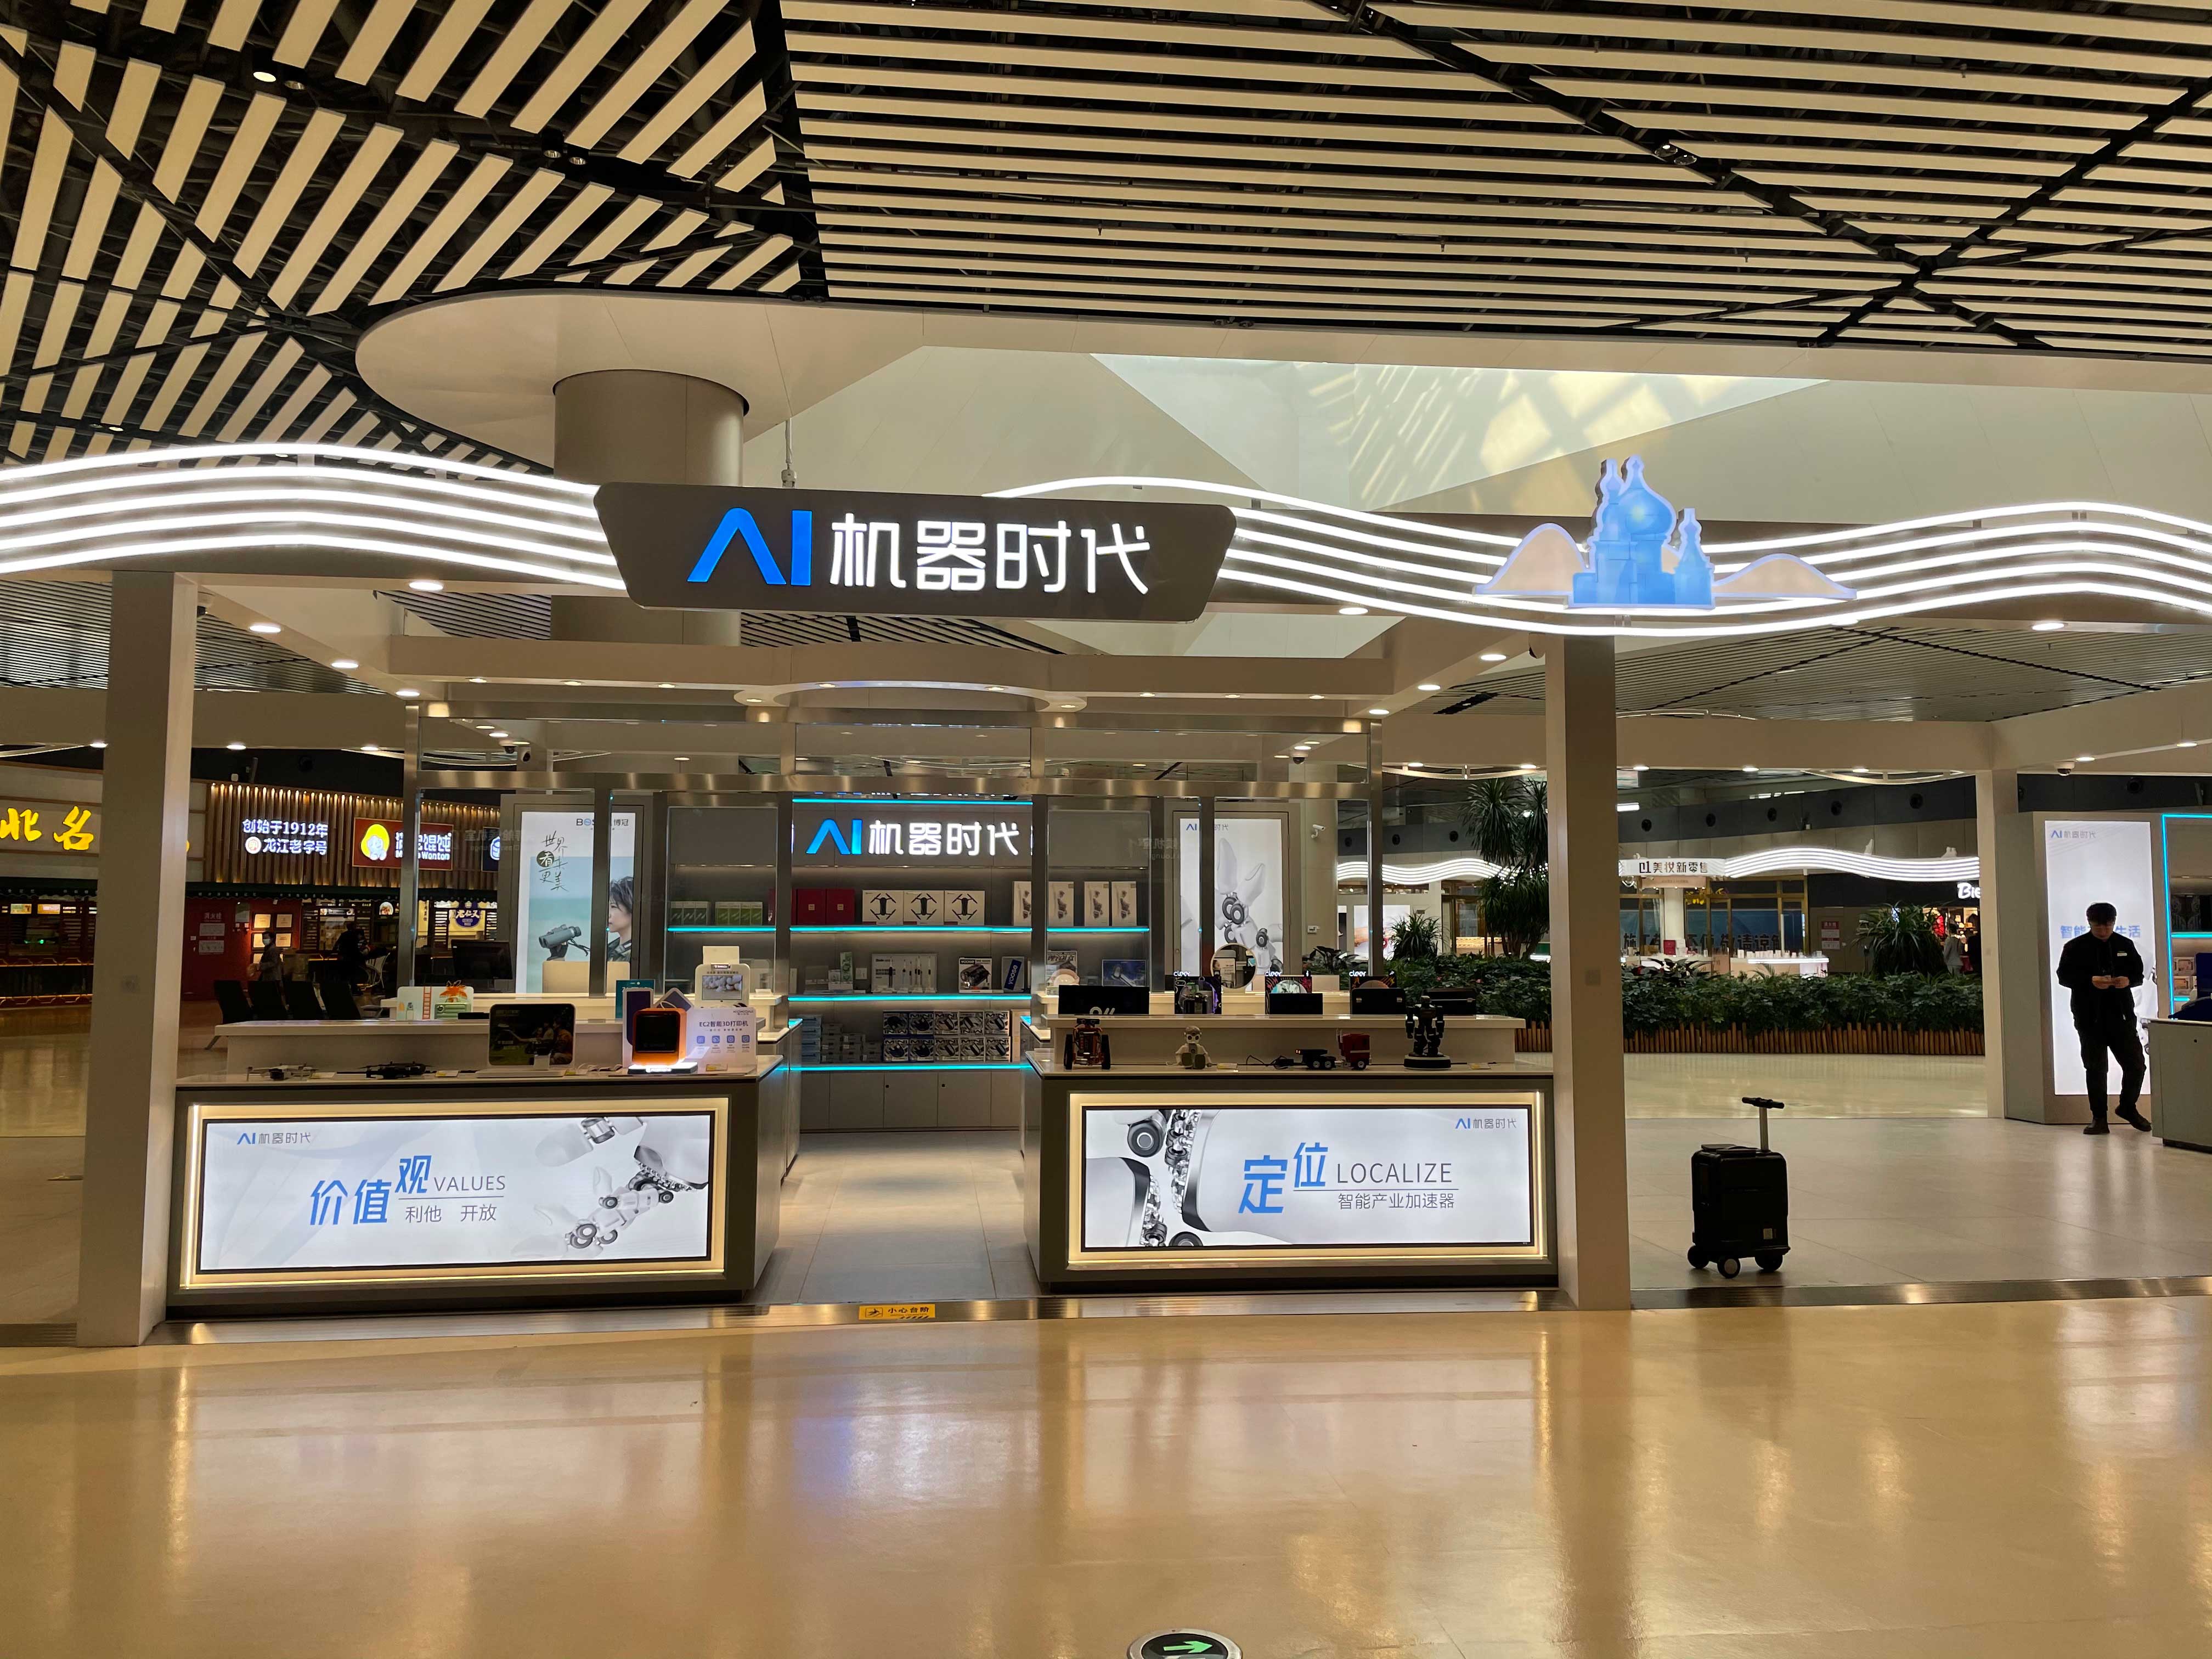 太平国际机场T2号航站楼隔离区内C2中央商业中心广场